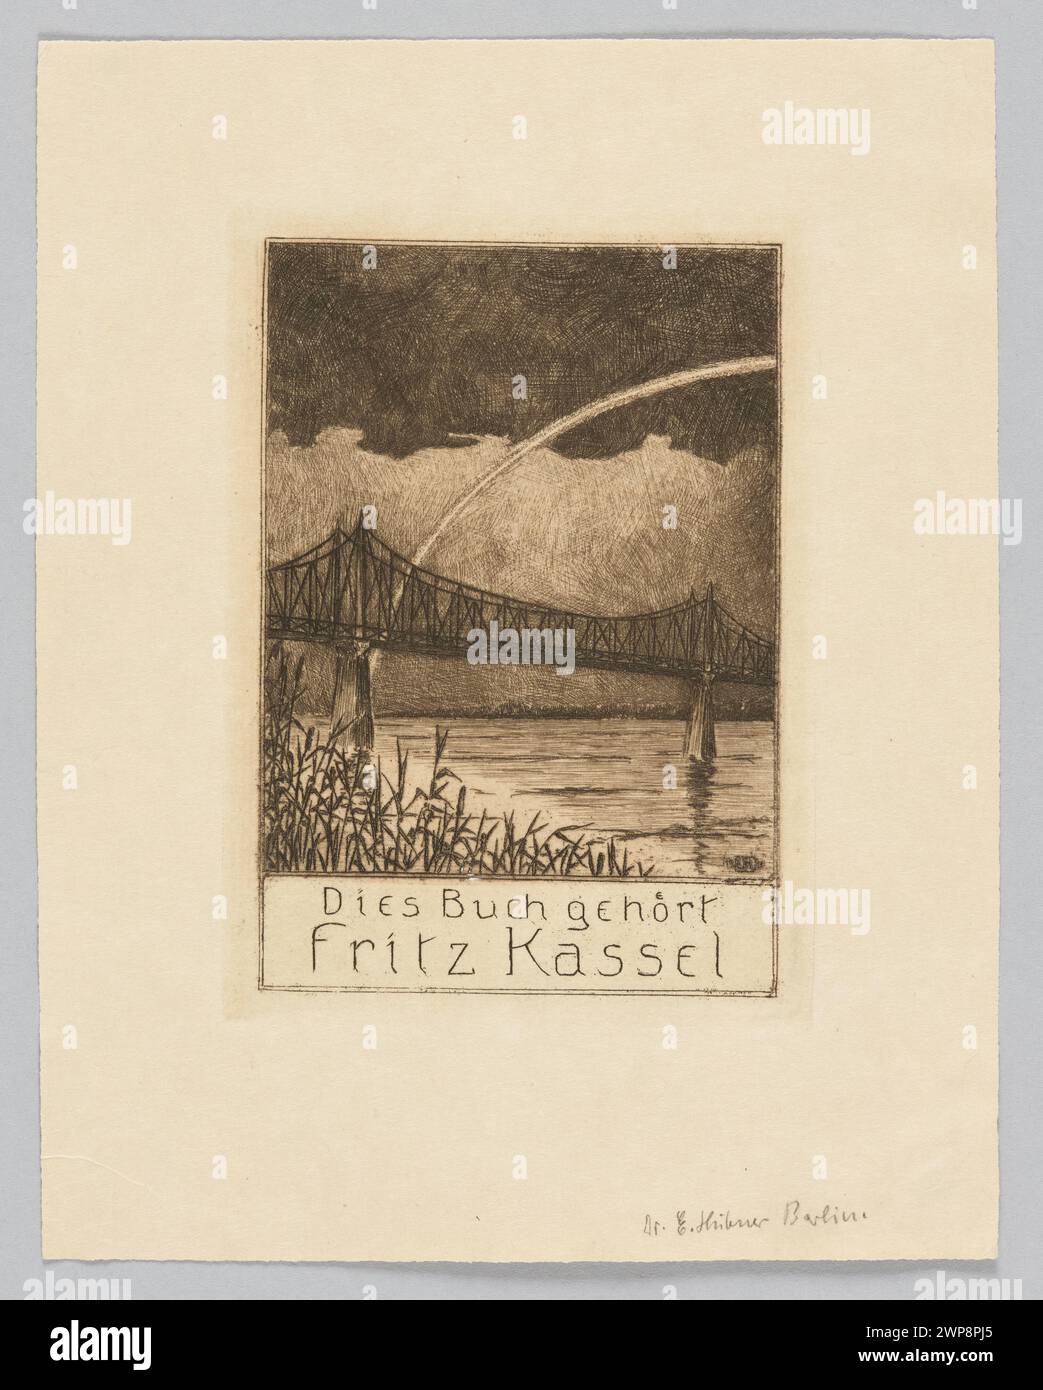 [ExLibris:] Dies buch gehört Fritz Kassel; Hübner, Erich F. (1883-1920); 1911 (1911-00-00-1911-00-00); Stockfoto